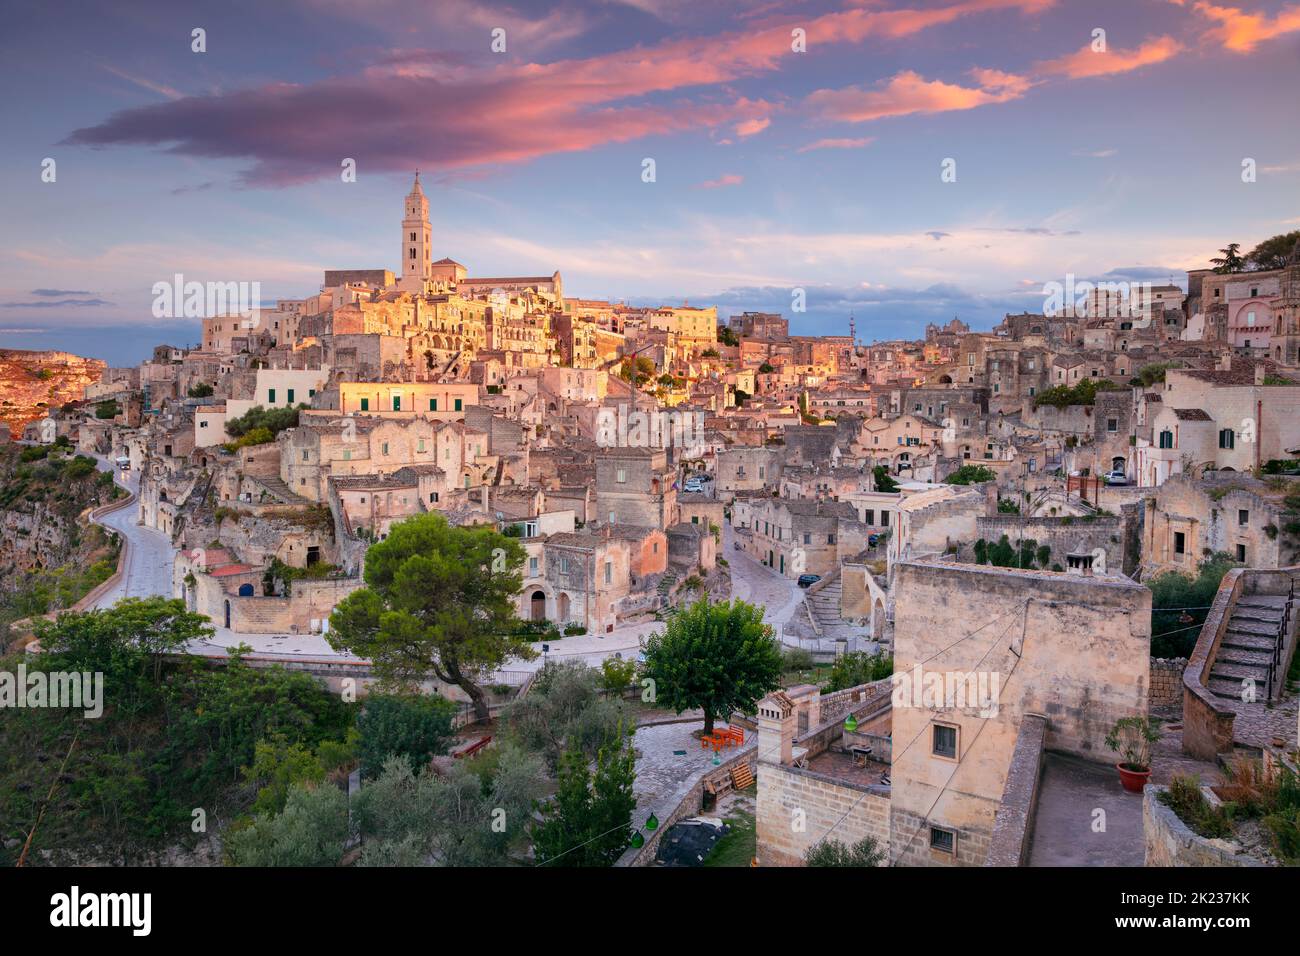 Matera, Italia. Immagine aerea del paesaggio urbano della città medievale di Matera, Basilicata Italia al bellissimo tramonto estivo. Foto Stock